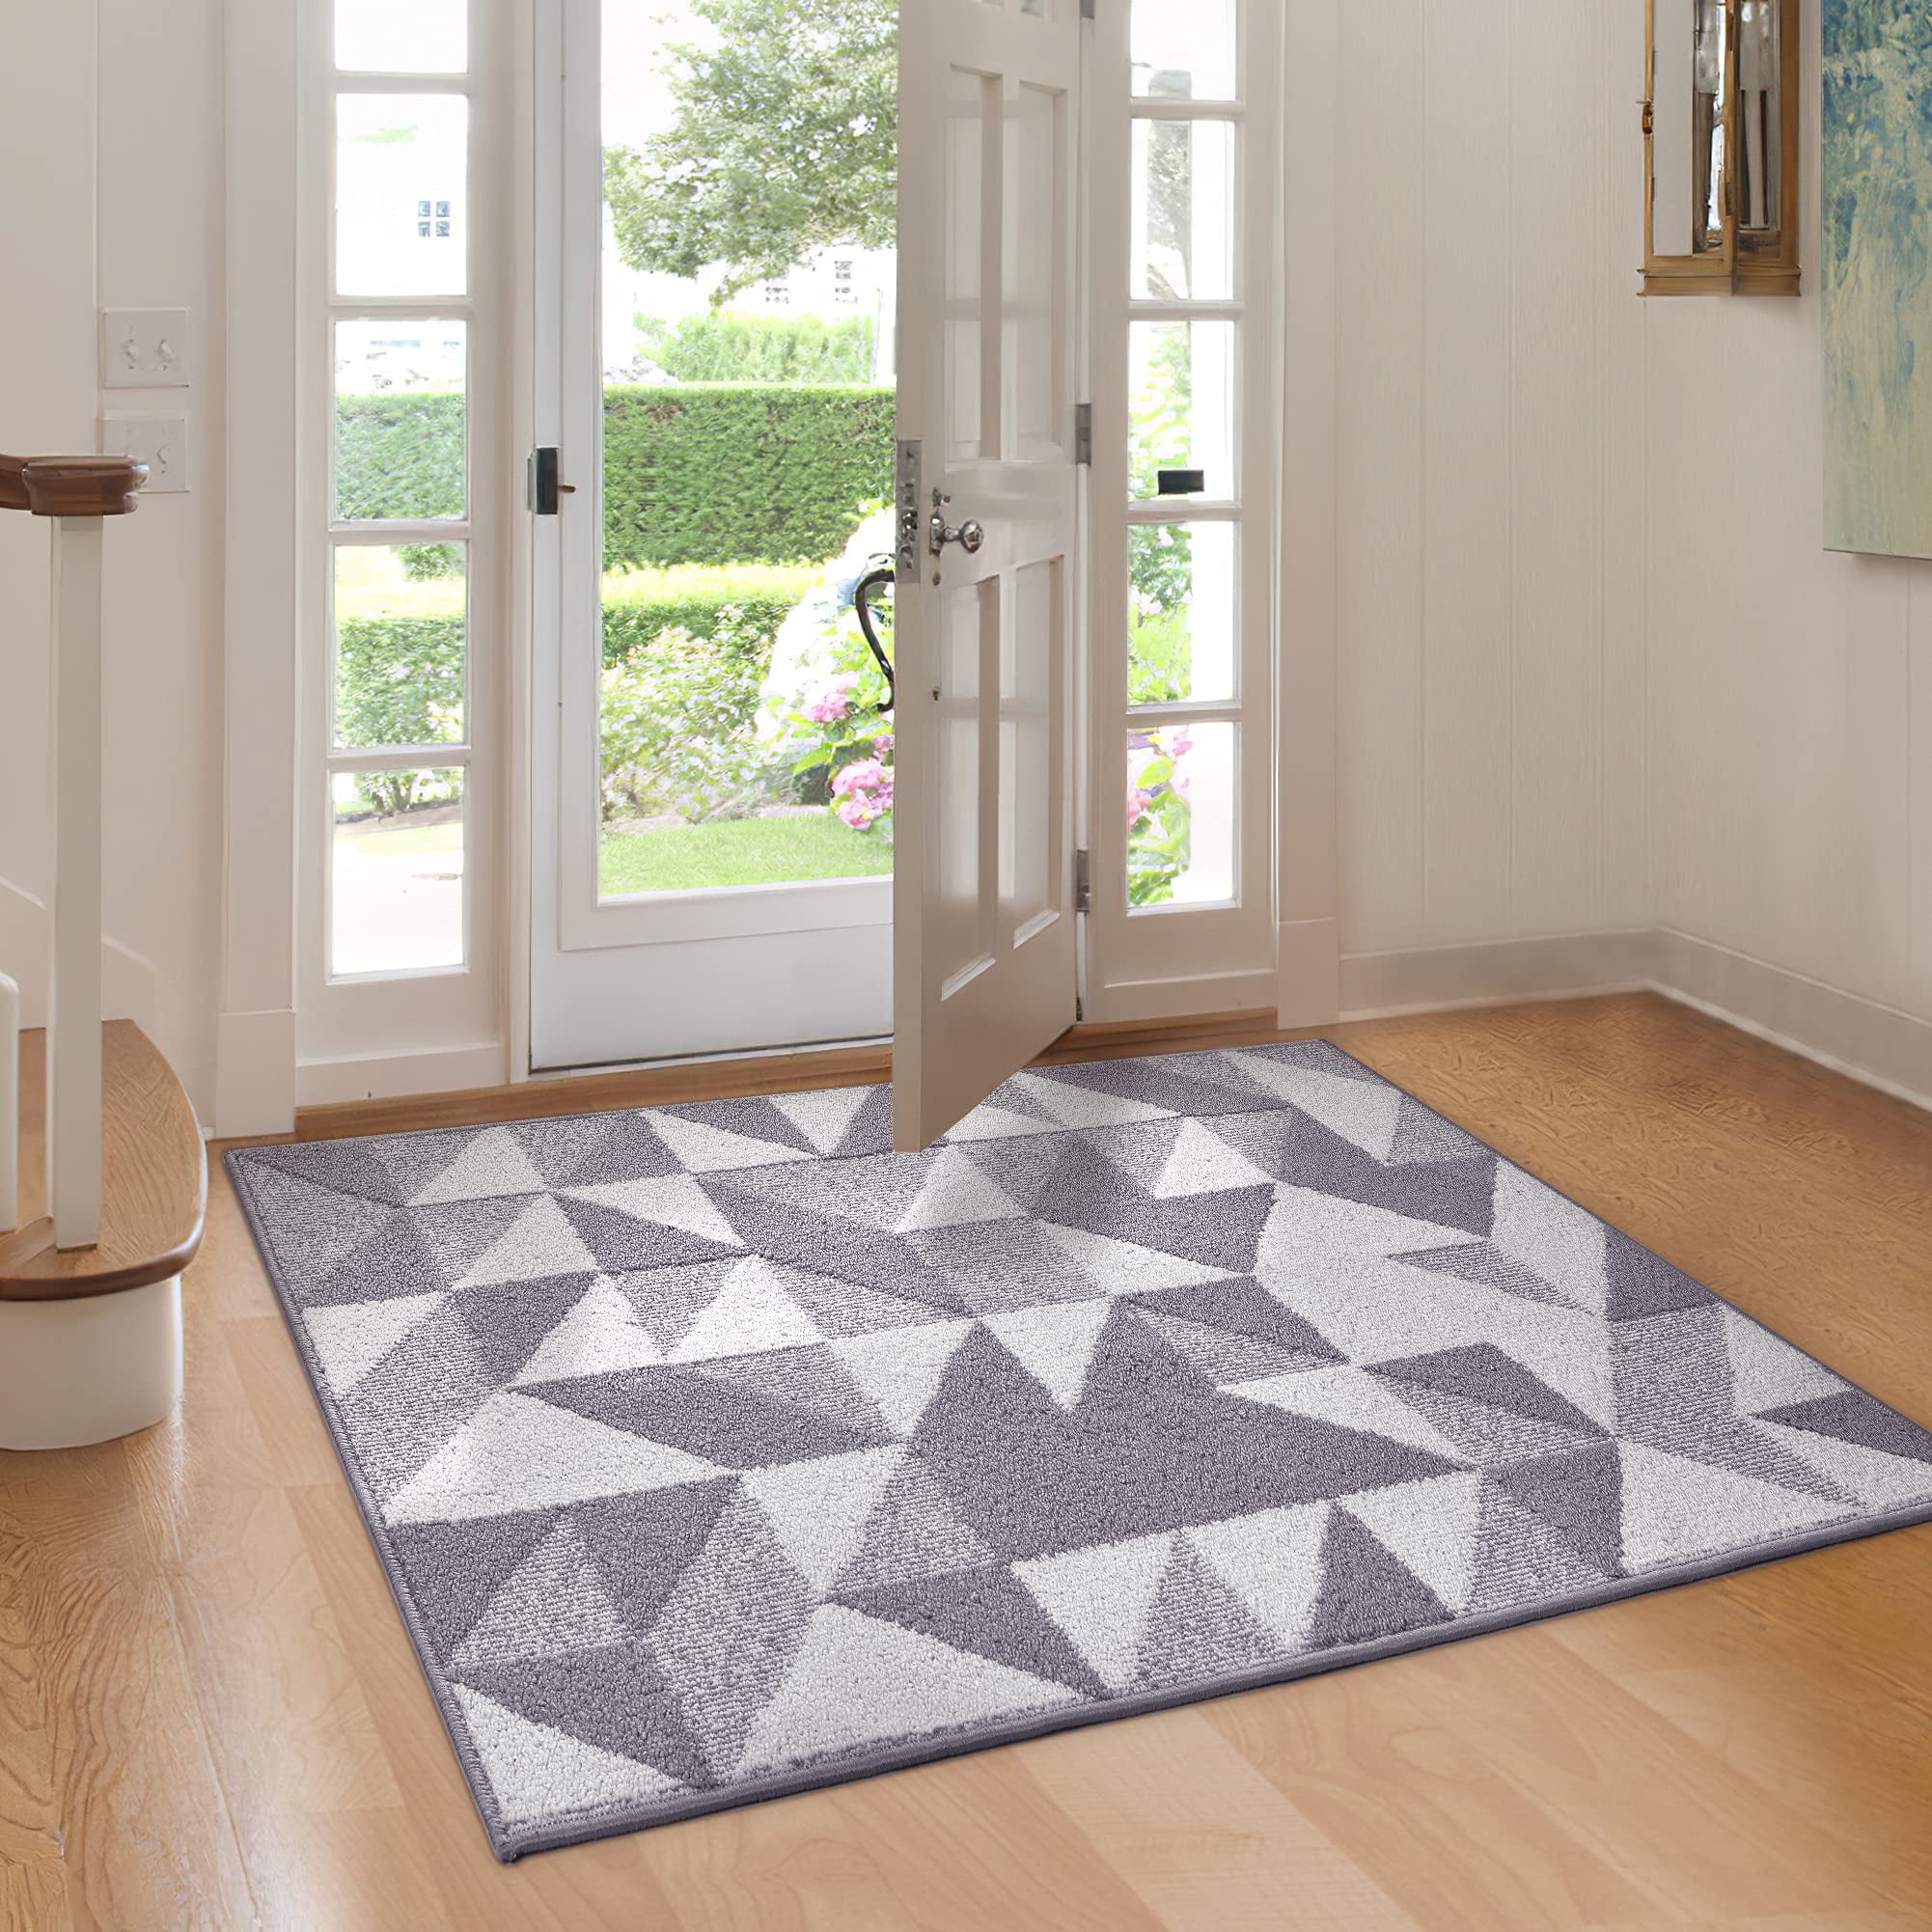 hicorfe Indoor Doormat,Front Back Door Mat Rubber Backing 20”x31.5